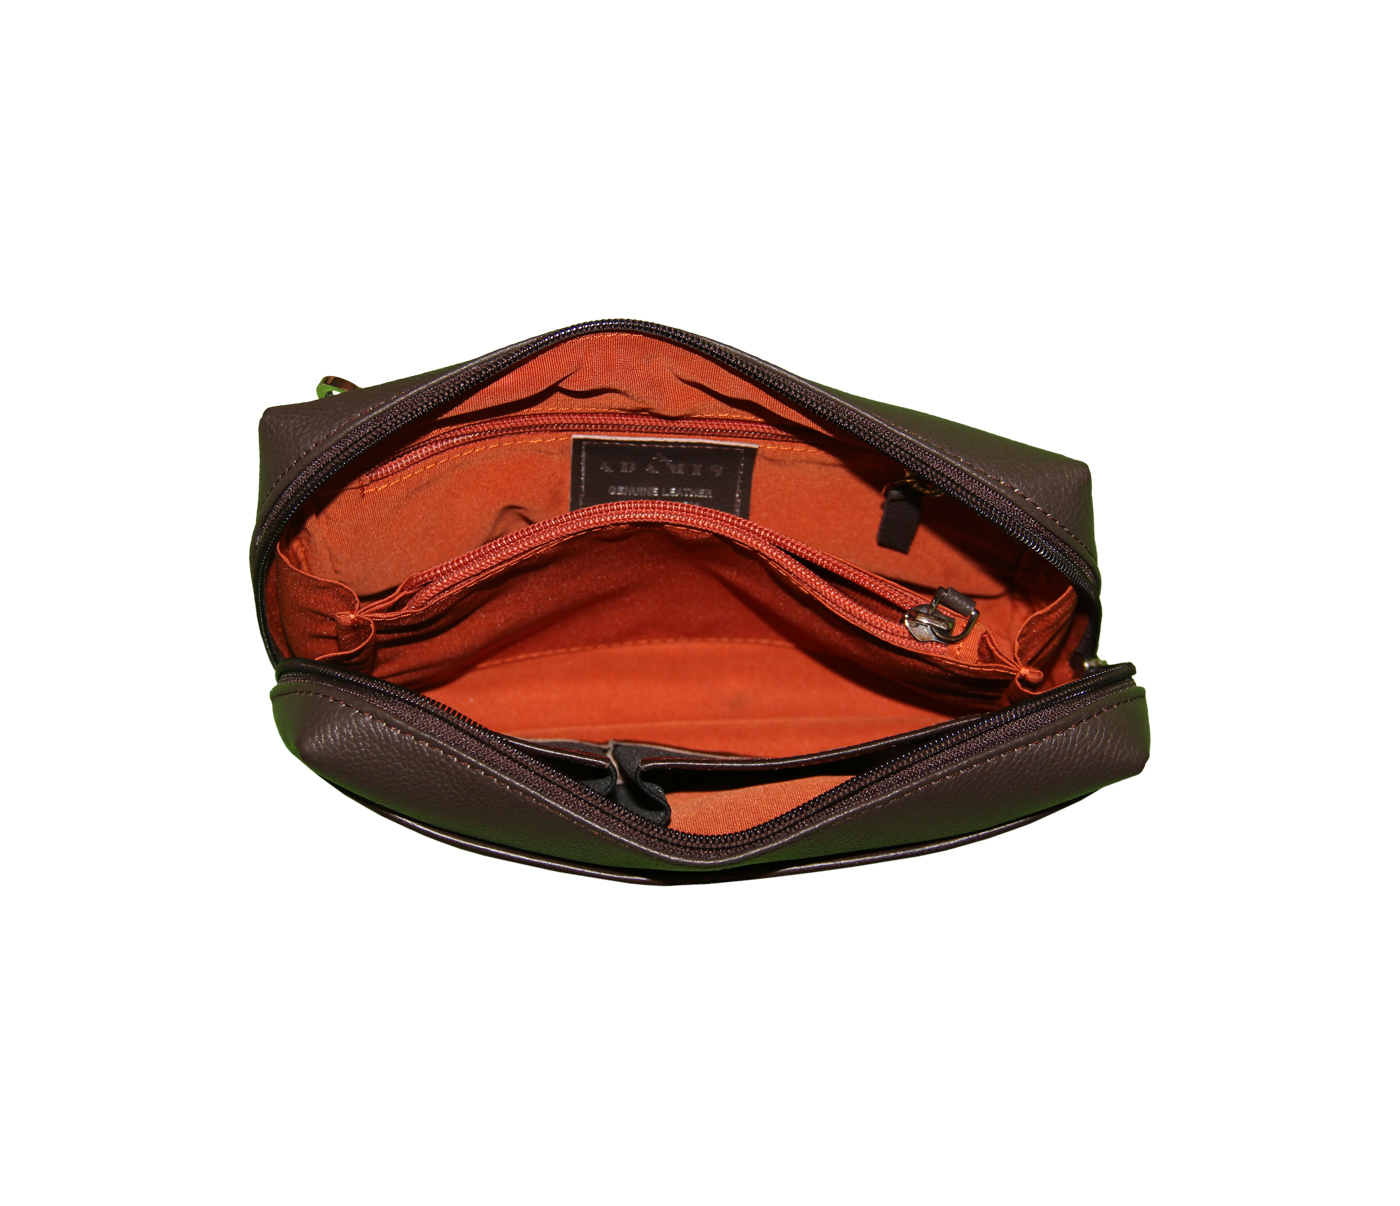 Bag-Hayden-Men's bag cum travel pouch in Genuine Leather - Brown.